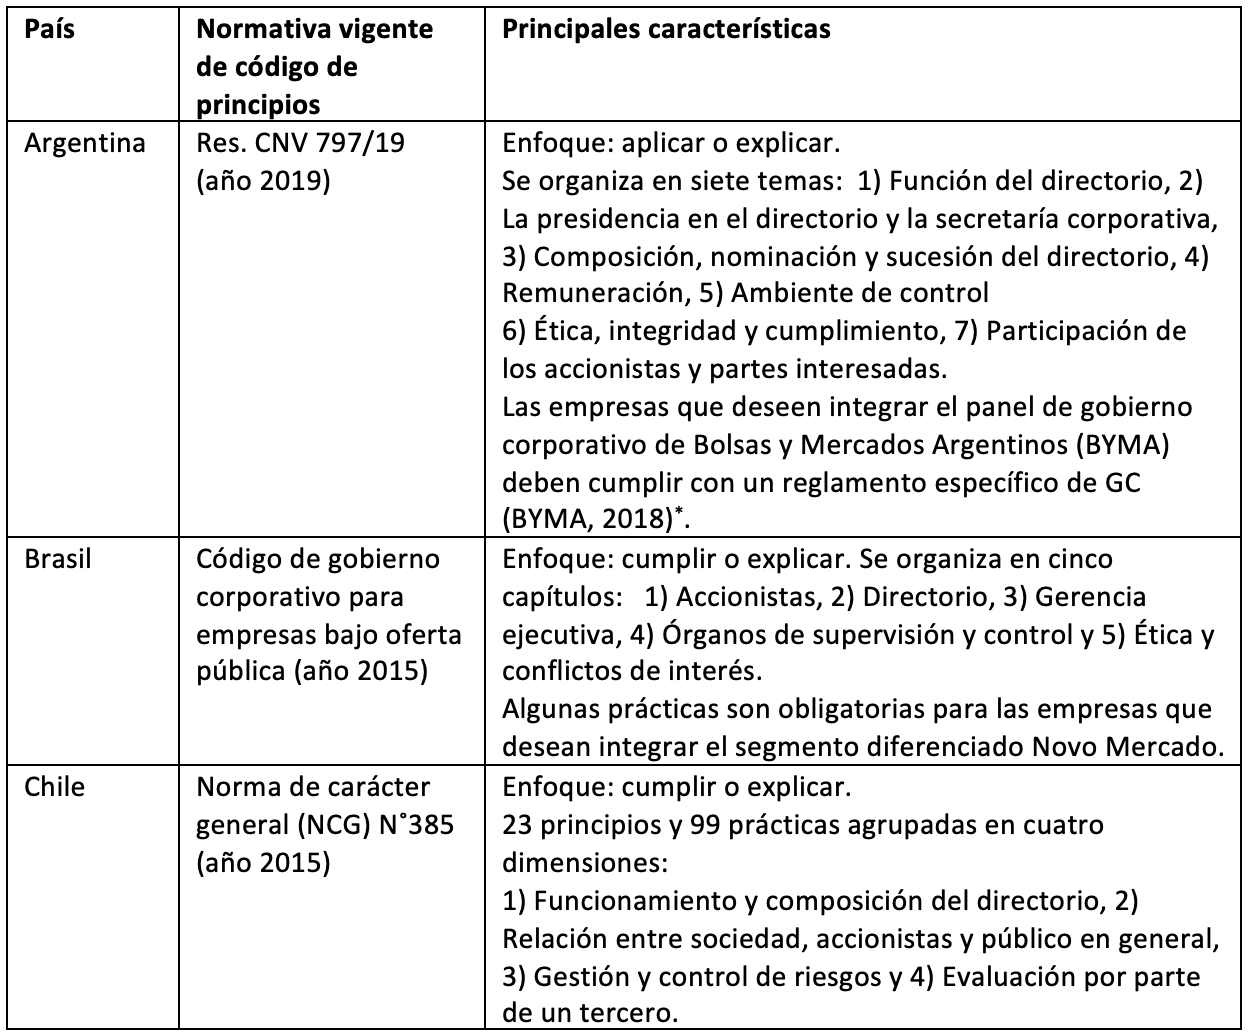 Códigos de gobierno corporativo en algunos países de Latinoamérica